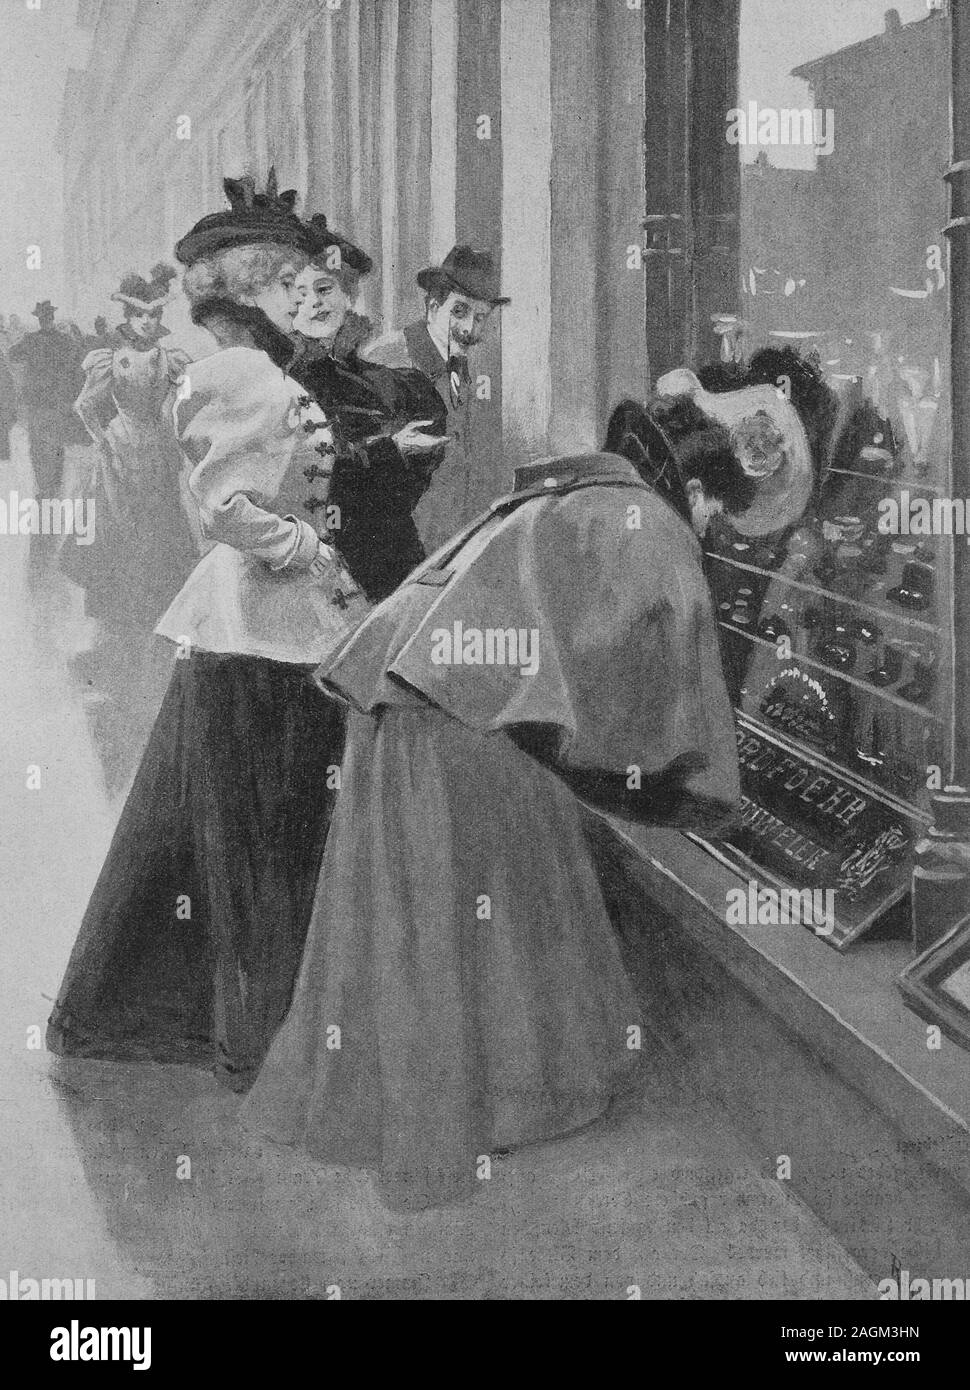 Les femmes sont debout devant la fenêtre d'un bijoutier et sont à la recherche de souhaits de Noël, de l'estampe originale à partir de l'année 1899, Frauen stehen vor dem Fenster und suchen nach einer Juweliers Weihnachtsgeschenken Originalvorlage, Reproduktion einer aus dem 19. Jahrhundert, OECD numérique Banque D'Images